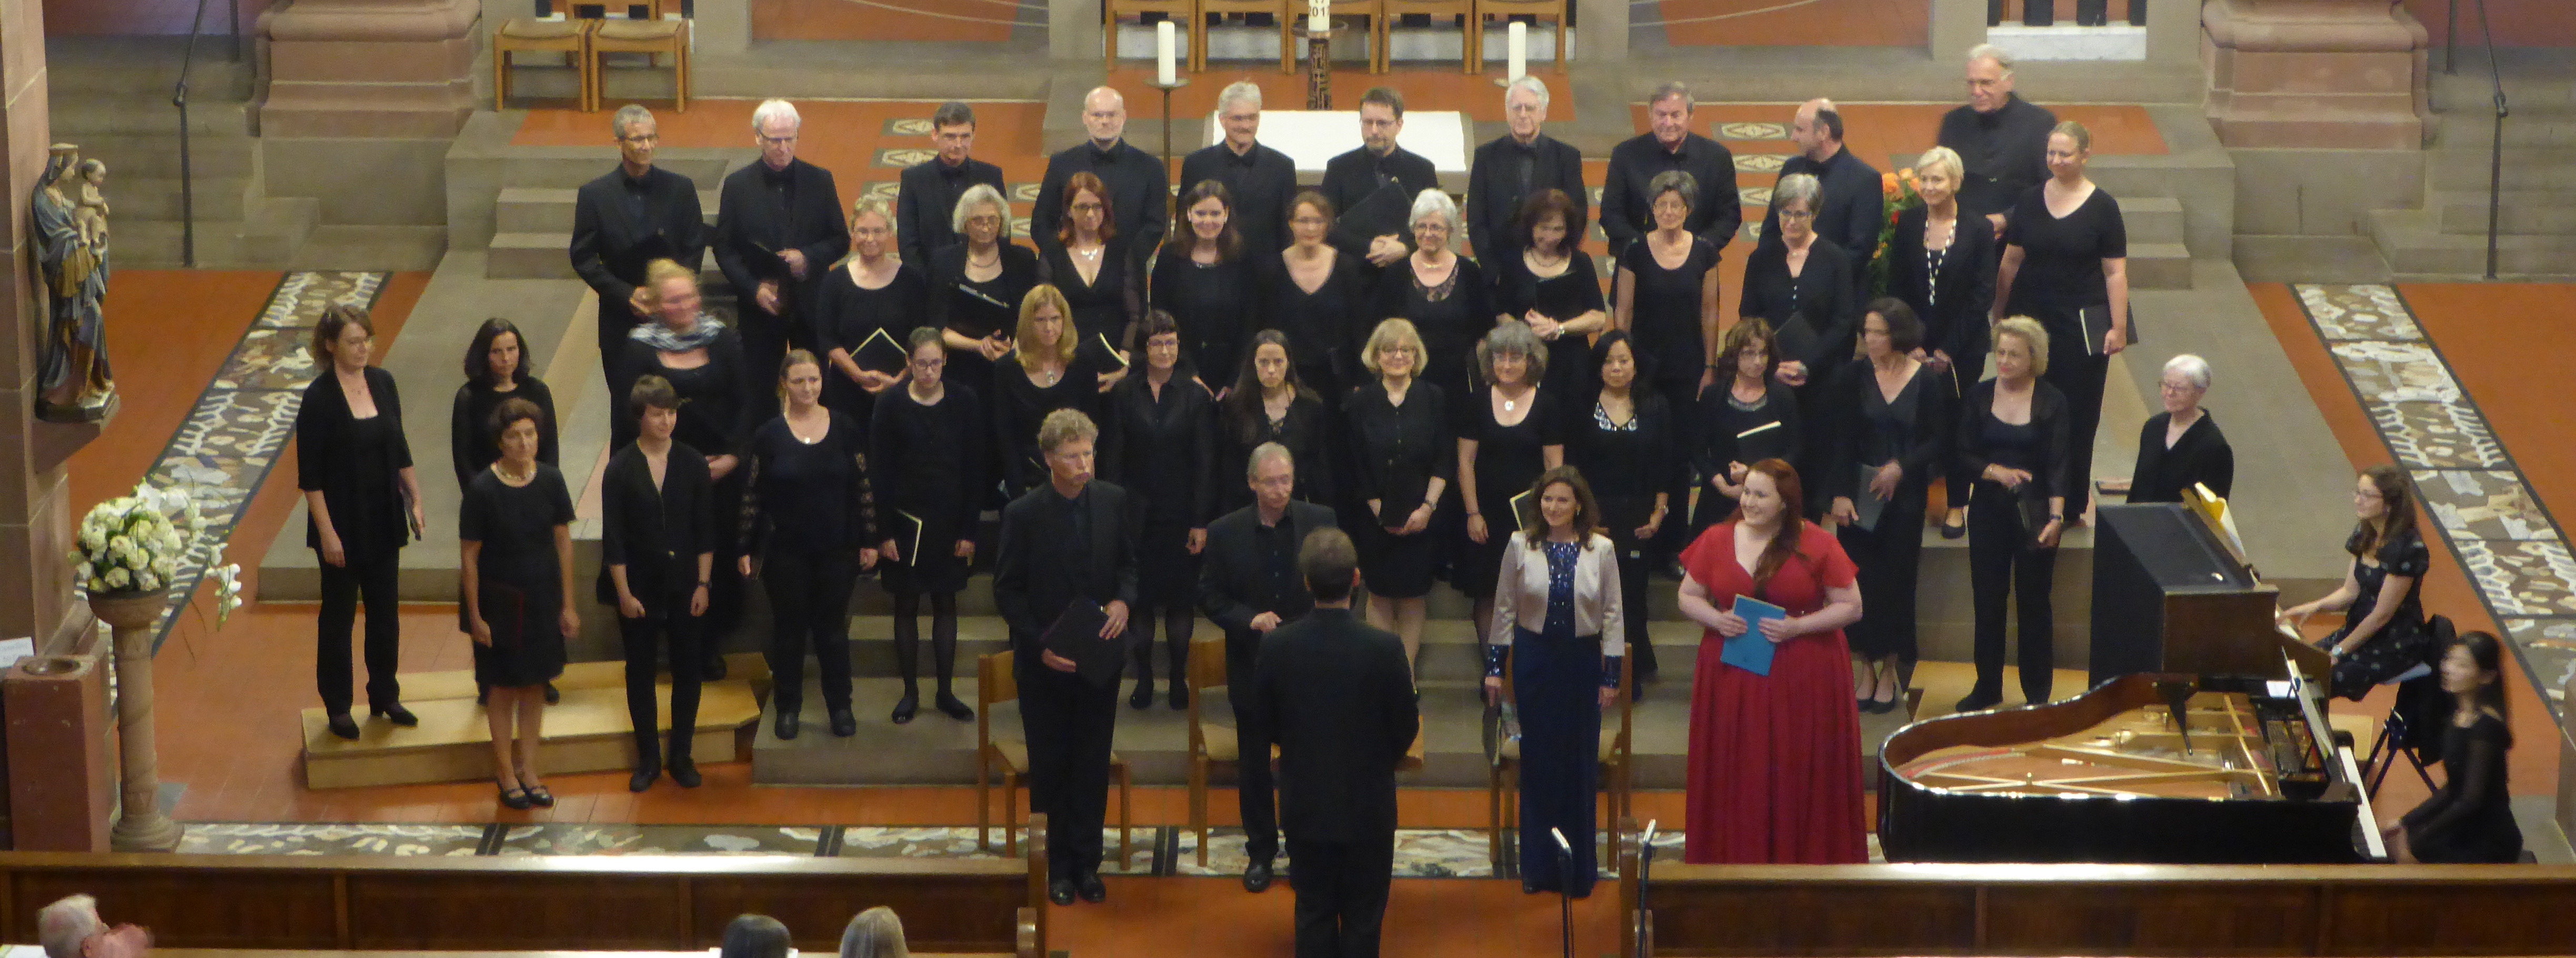 Das Vokalensemble Herz Jesu Ettlingen unter der Leitung von Markus Bieringer, die Instrumentalisten und Solisten sind bereit für den ersten Ton von Rossinis Petite Messe Solennelle